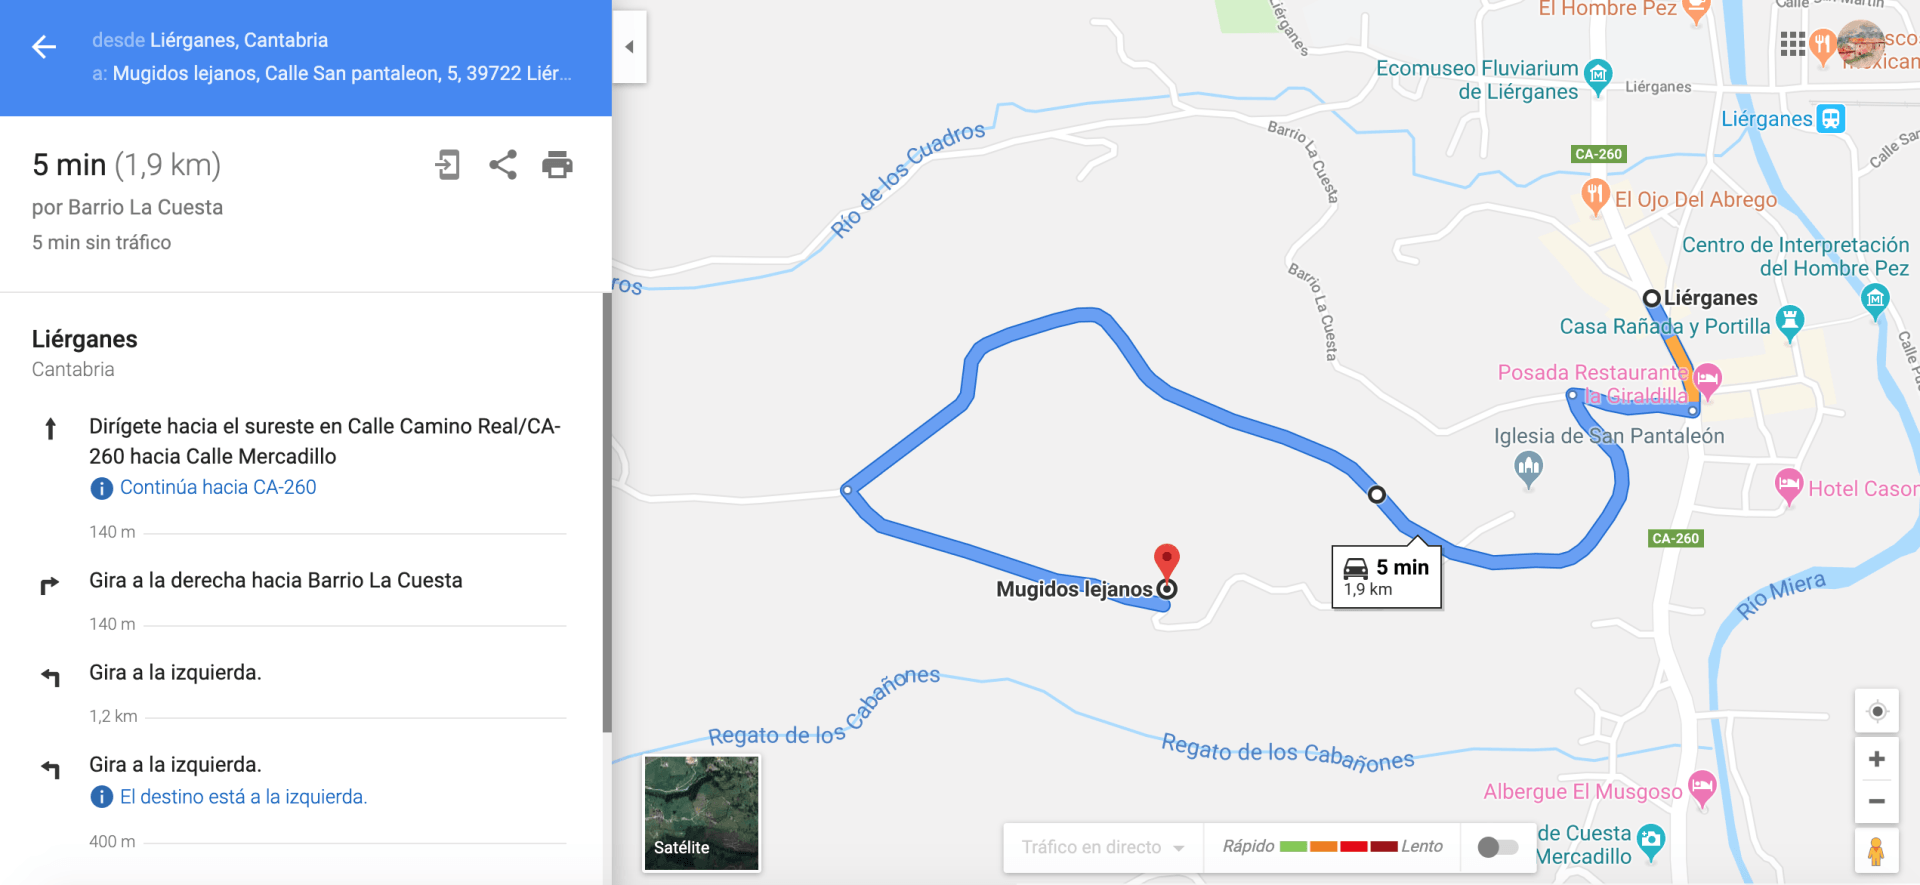 Pulsa sobre la imagen para poder visualizar al ruta en google maps